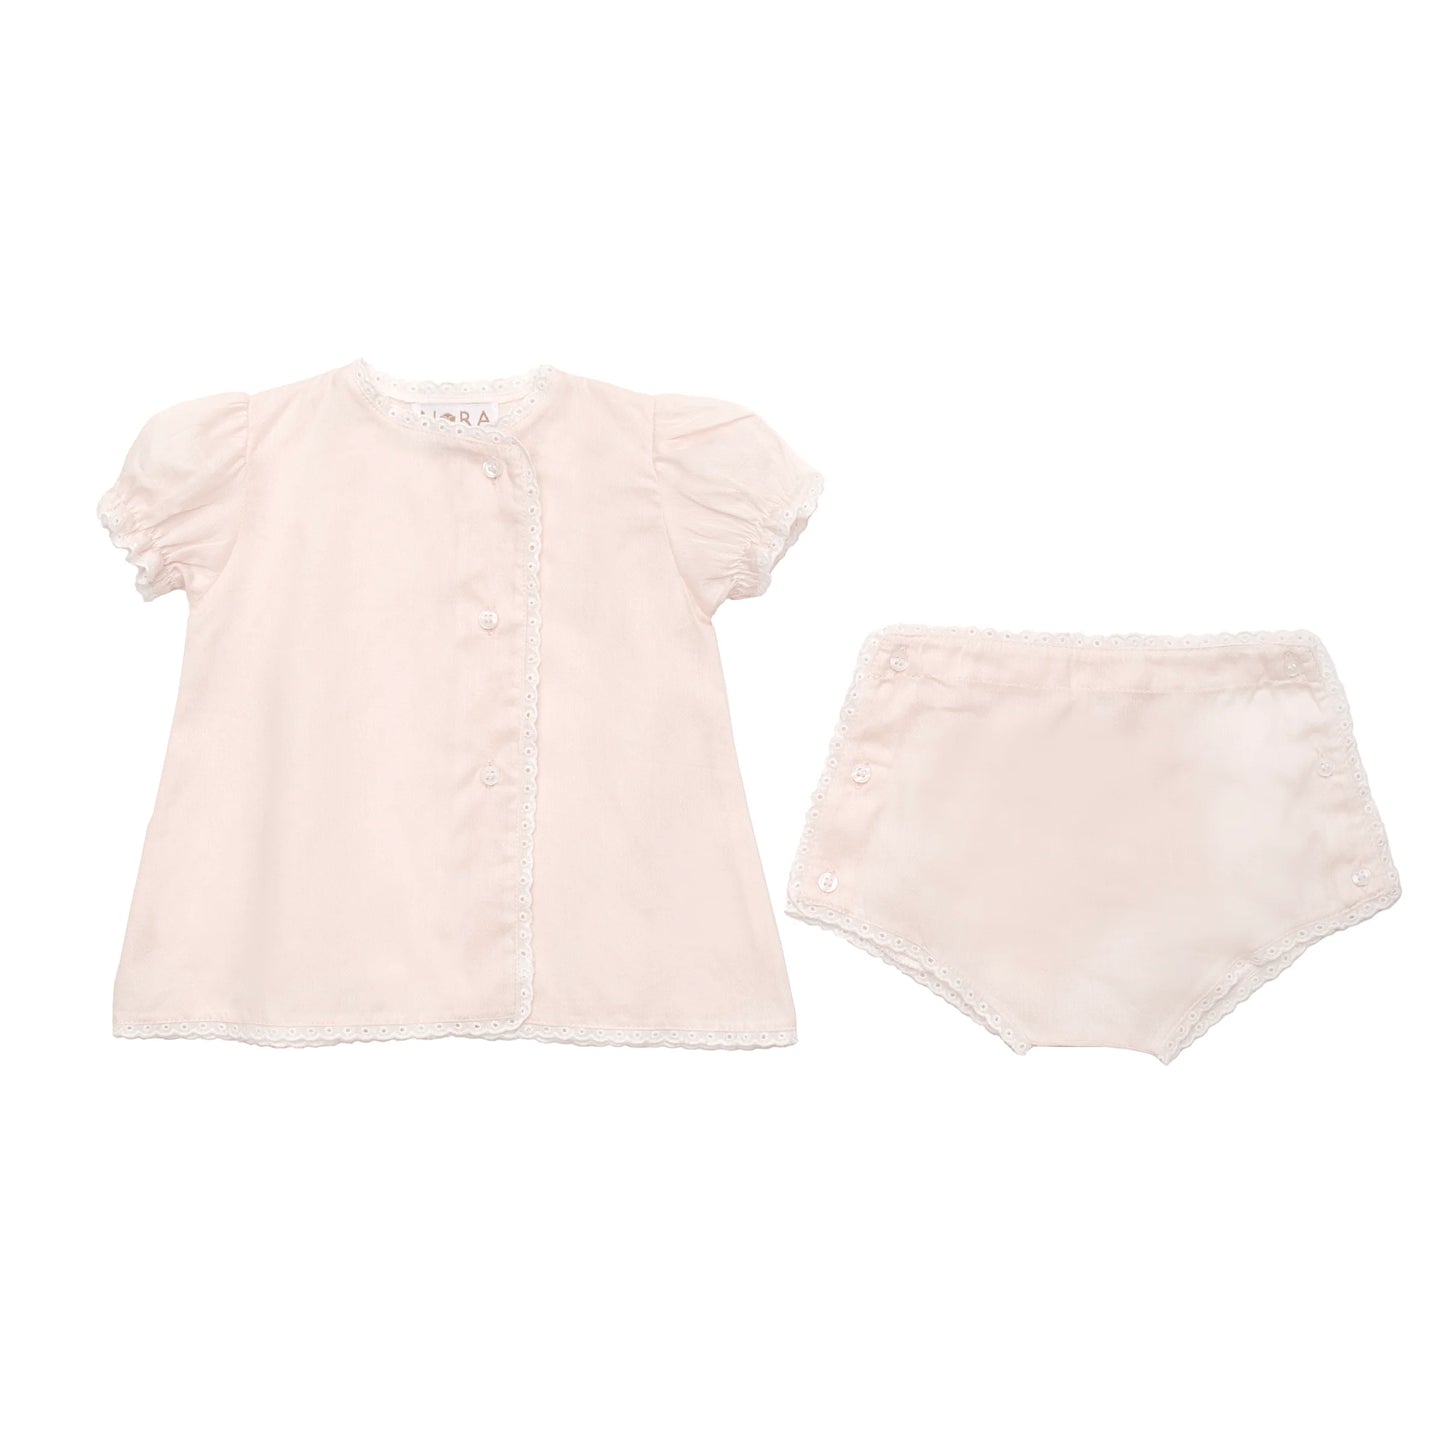 Lenora Pink Baby Eyelet Cotton Diaper Set 